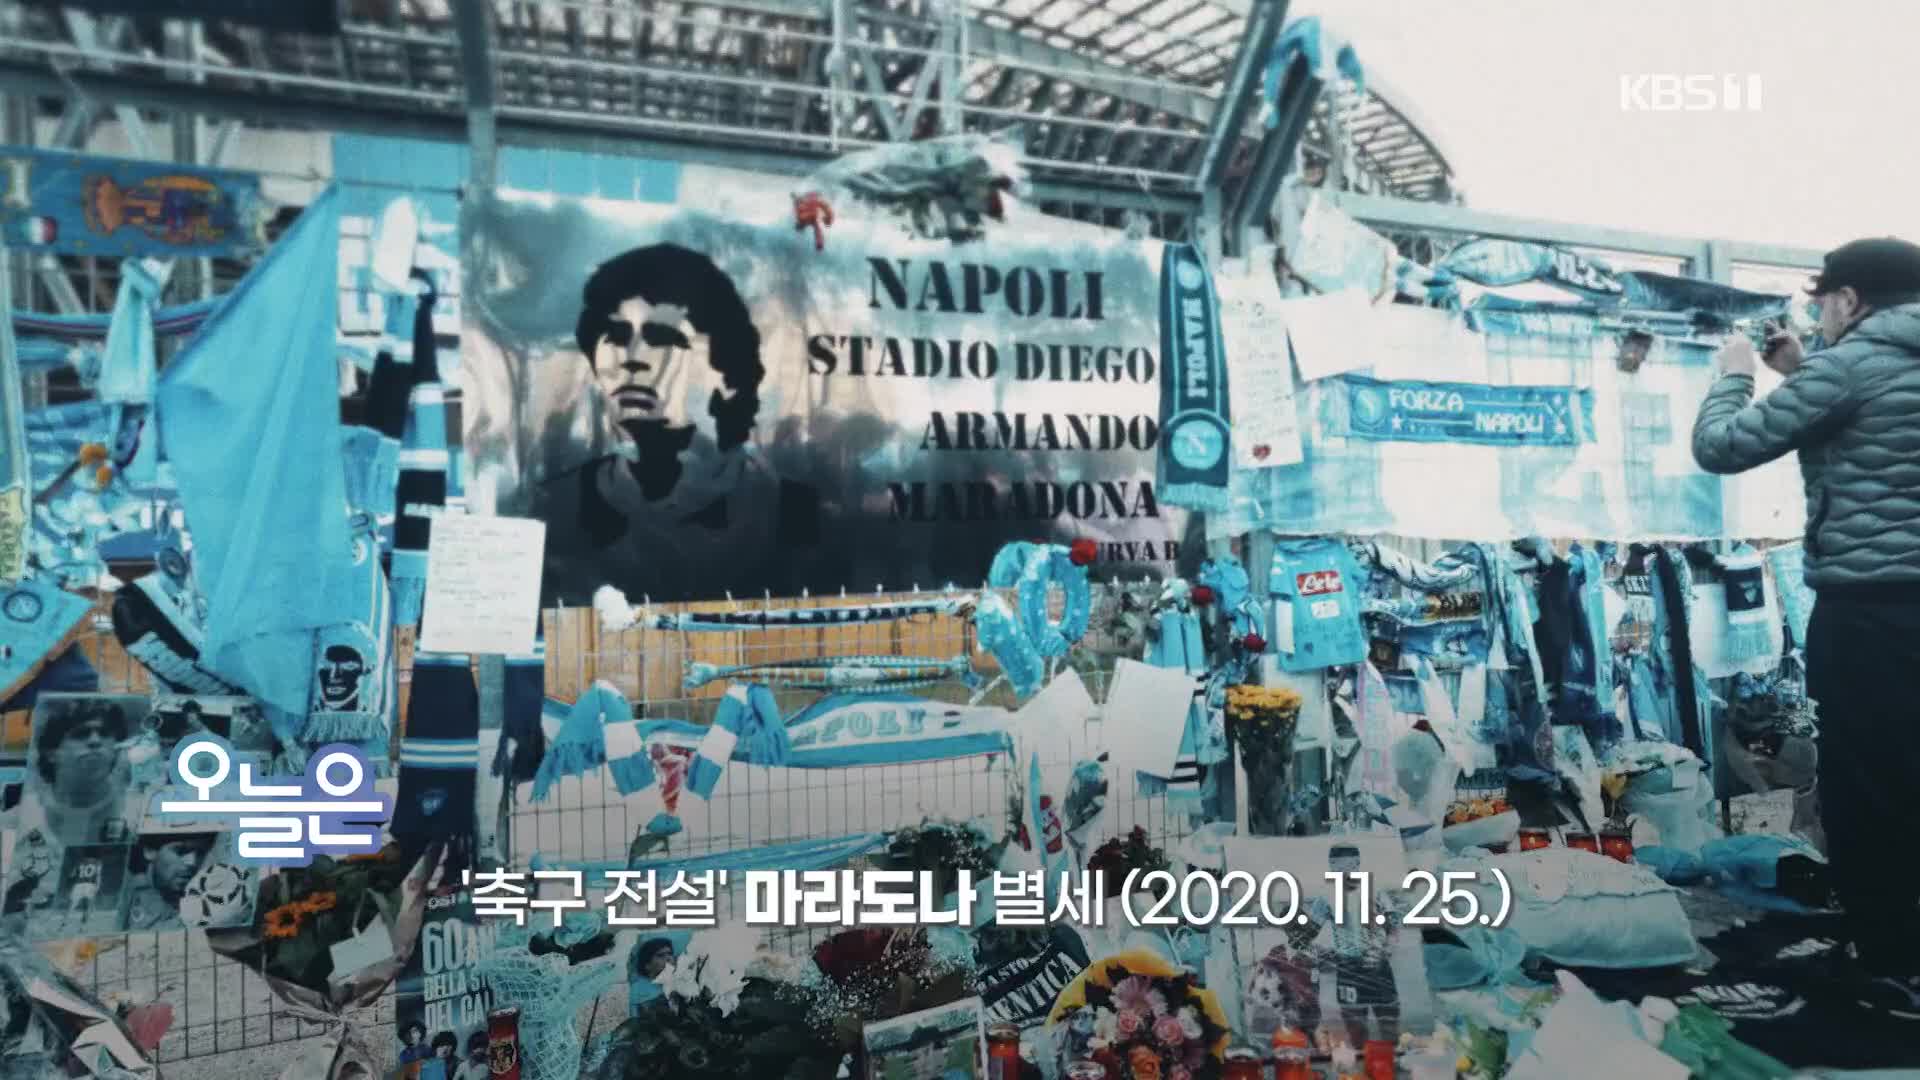 [오늘은] ‘축구 전설’ 마라도나 별세 (2020. 11. 25.)